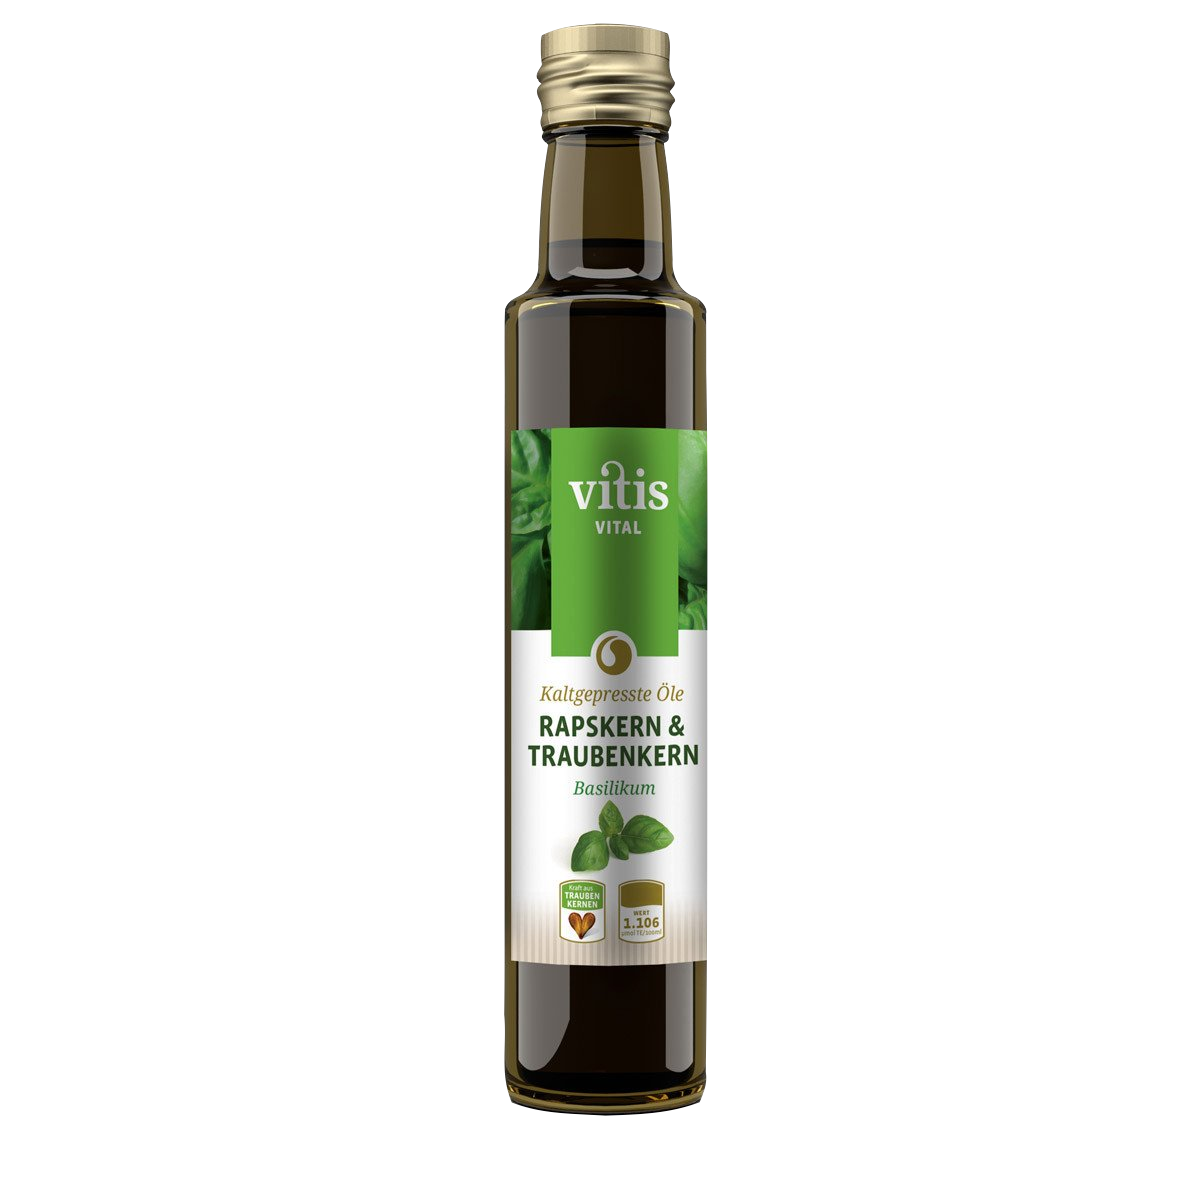 eine Flasche Raps- und Traubenkernöl Geschmacksrichtung Basilikum von der Firma Vitis Traubenkern GmbH